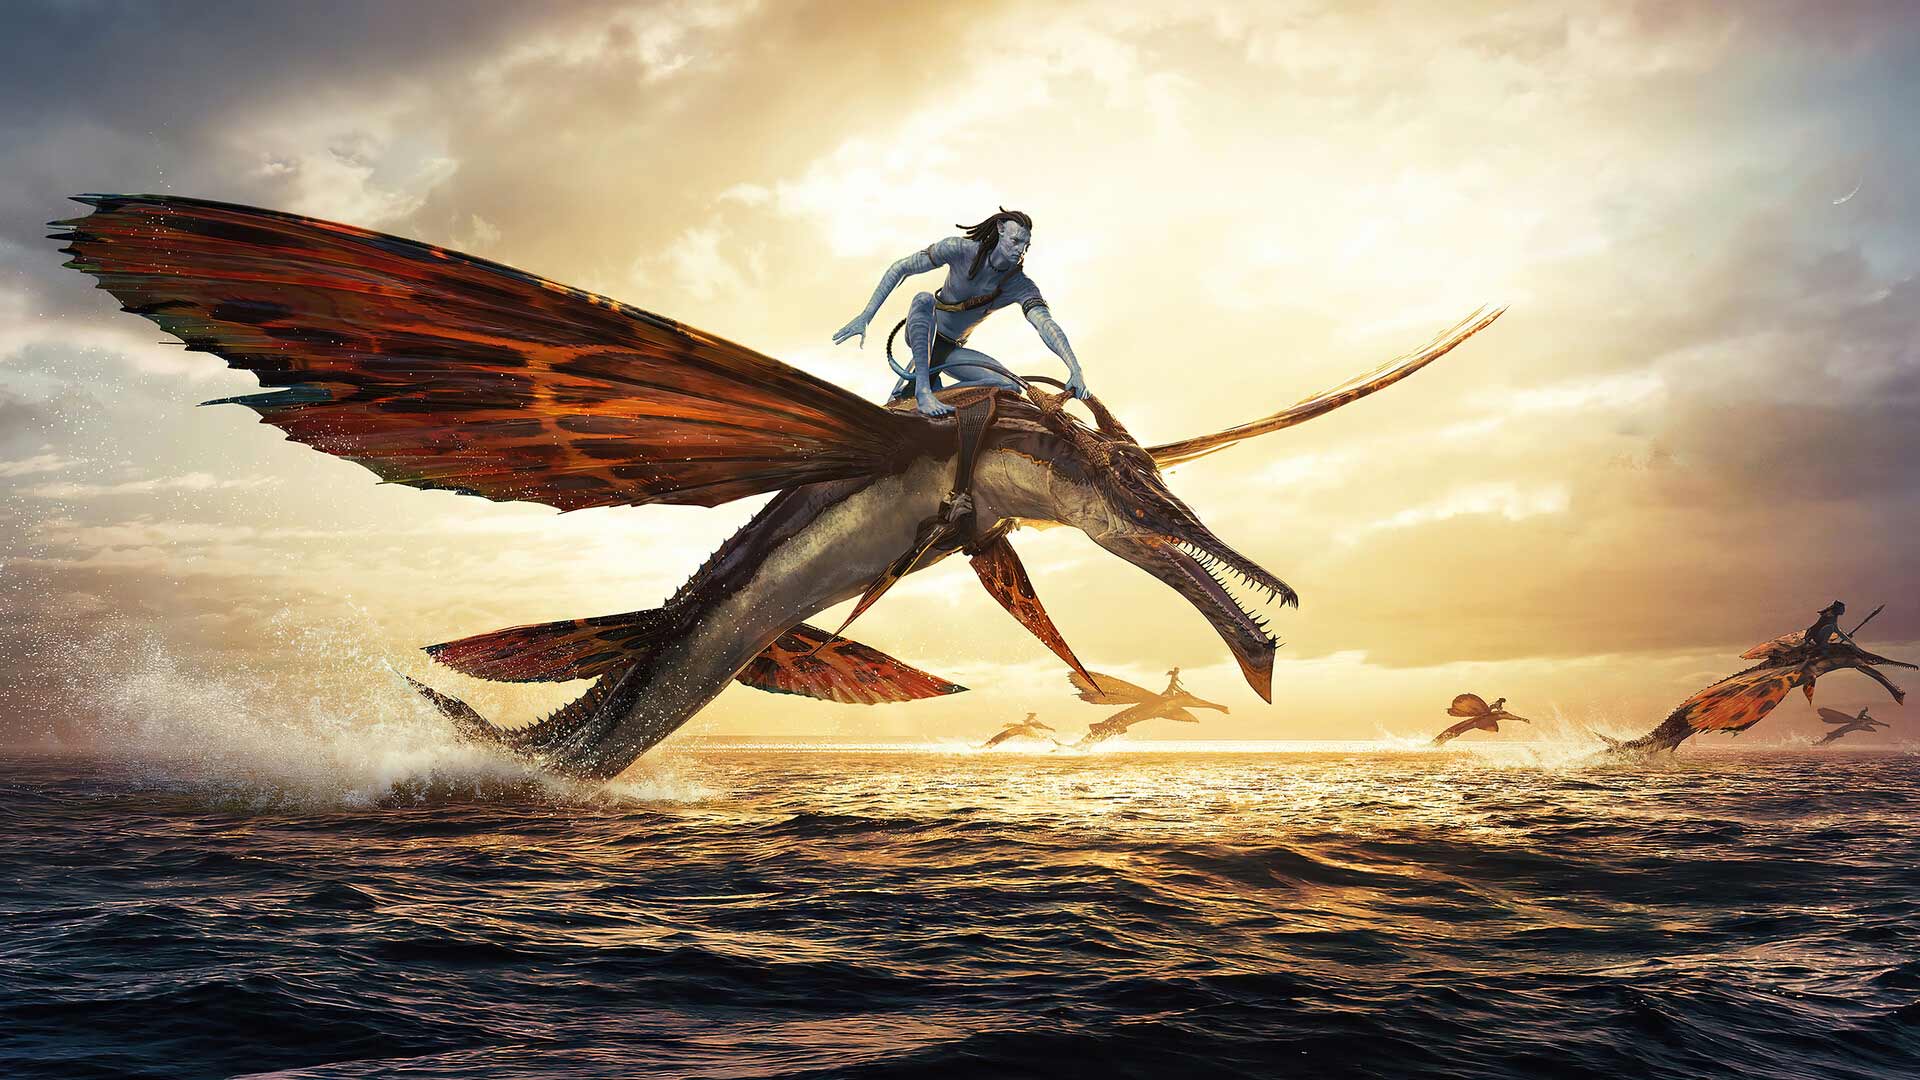 تاریخ انتشار نسخه دیجیتال فیلم Avatar: The Way of Water مشخص شد